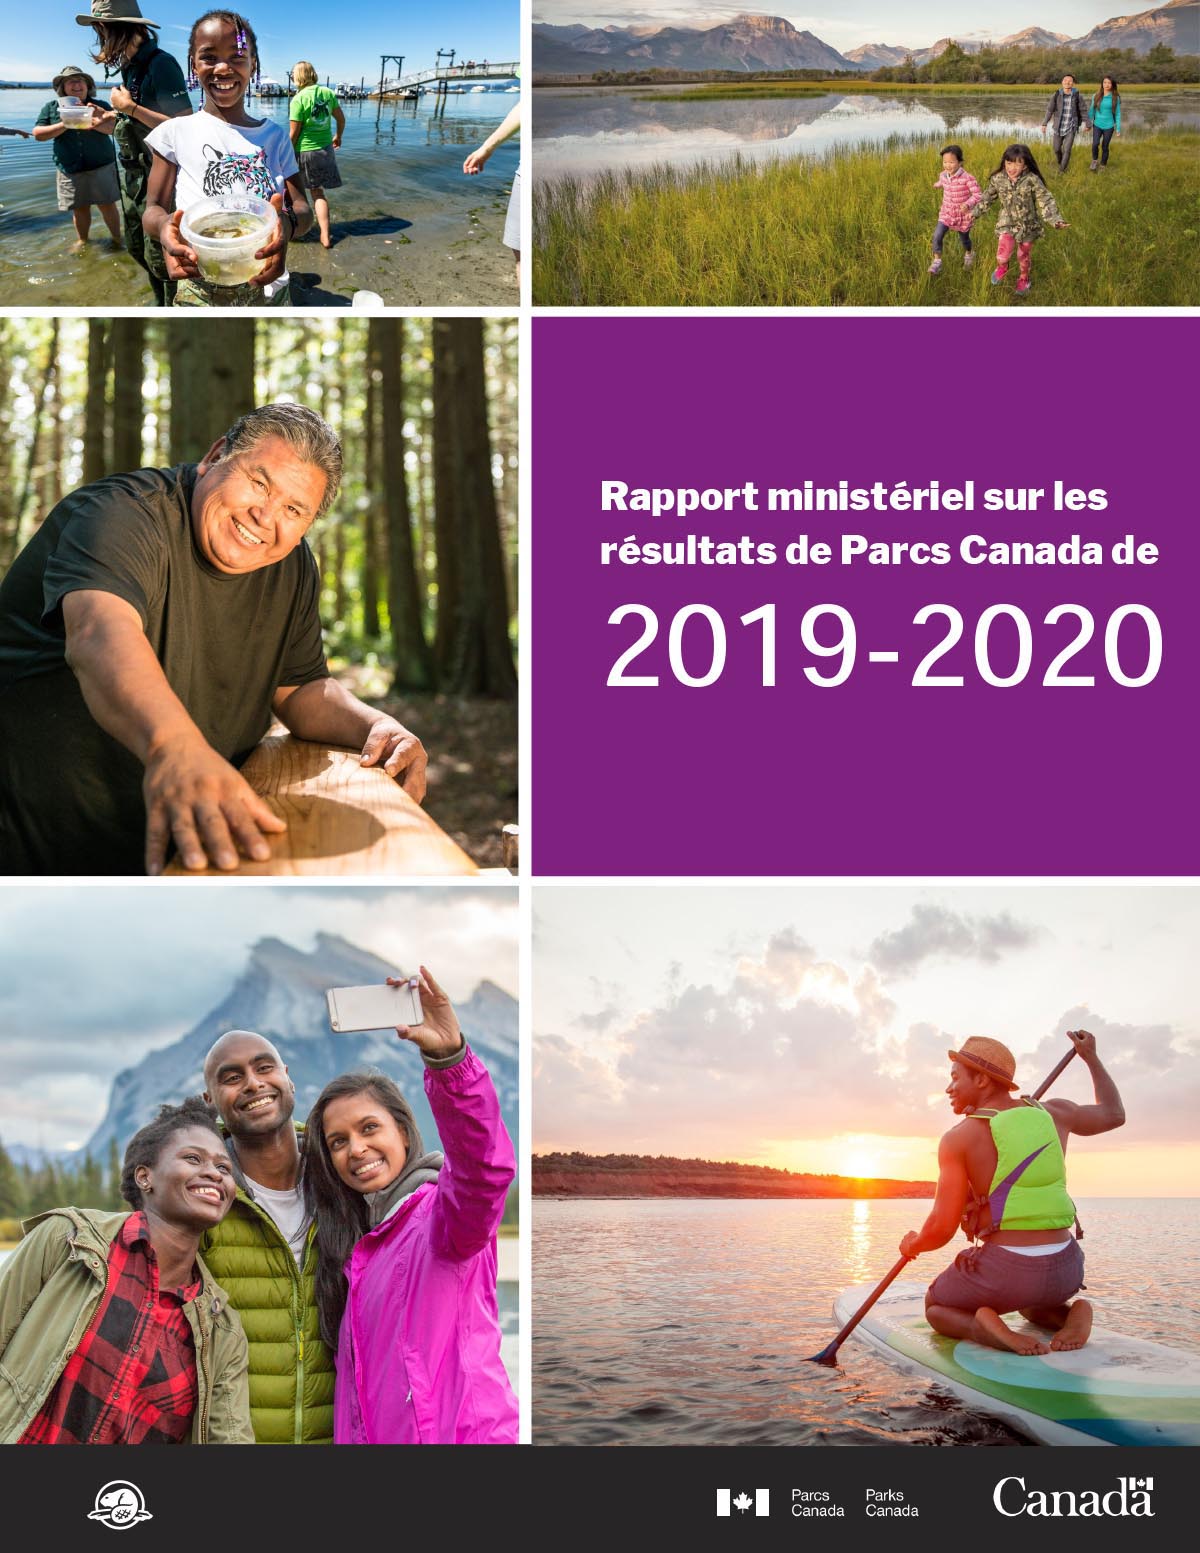 Rapport ministériel sur les résultats de Parcs Canada de 2019-2020